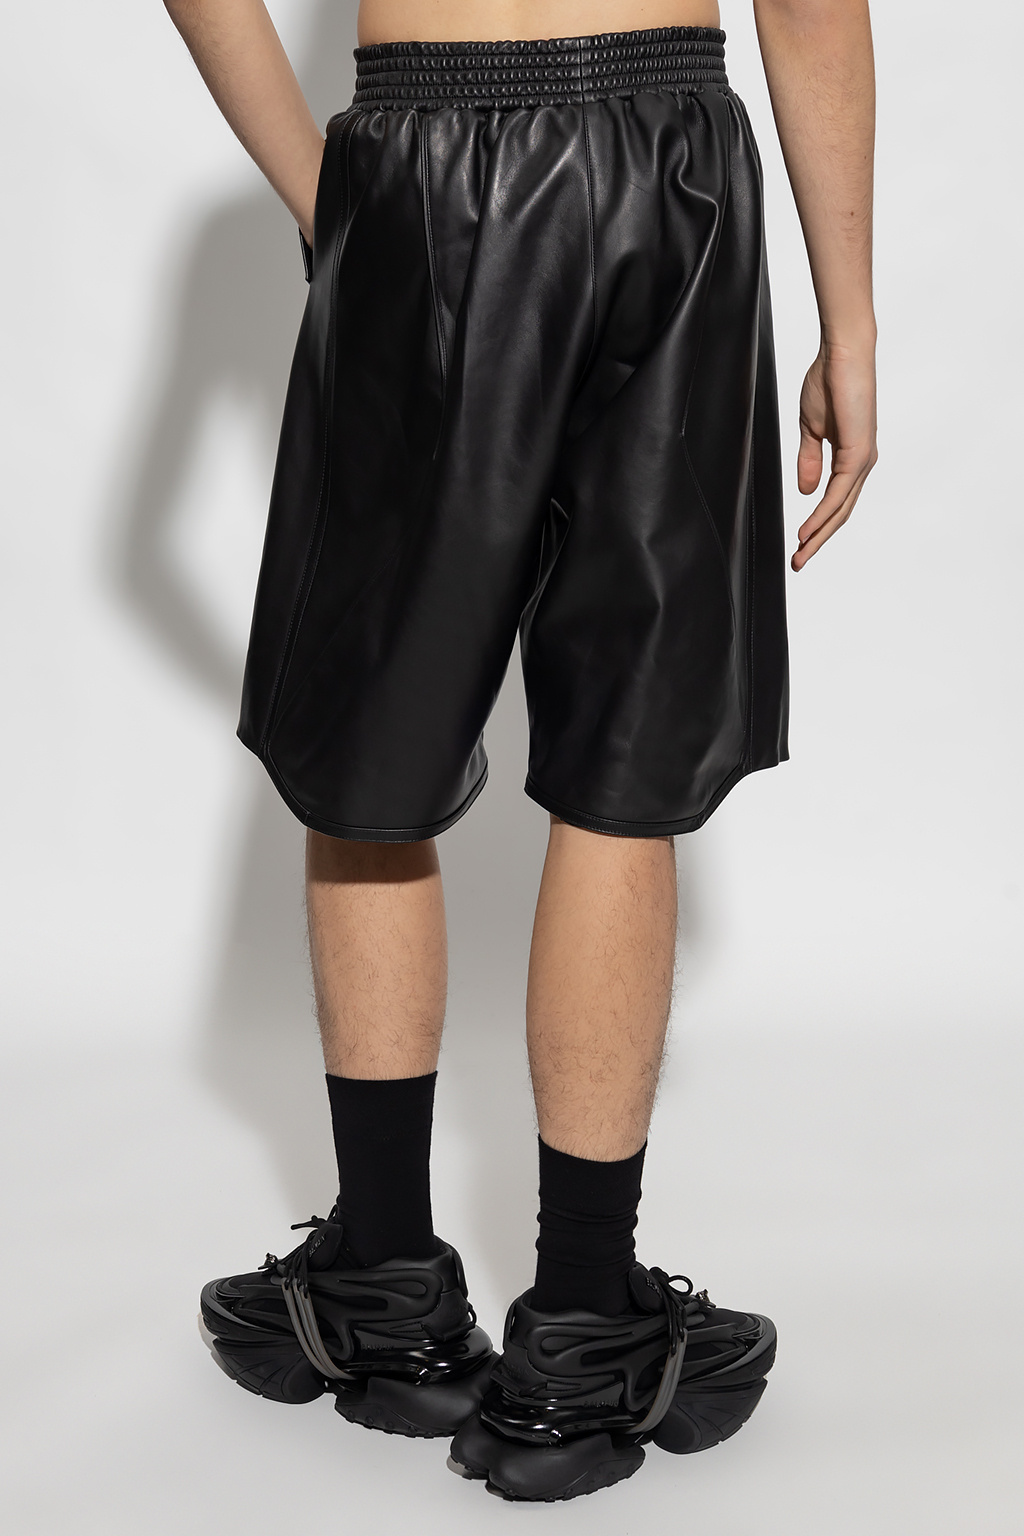 Balmain Leather shorts